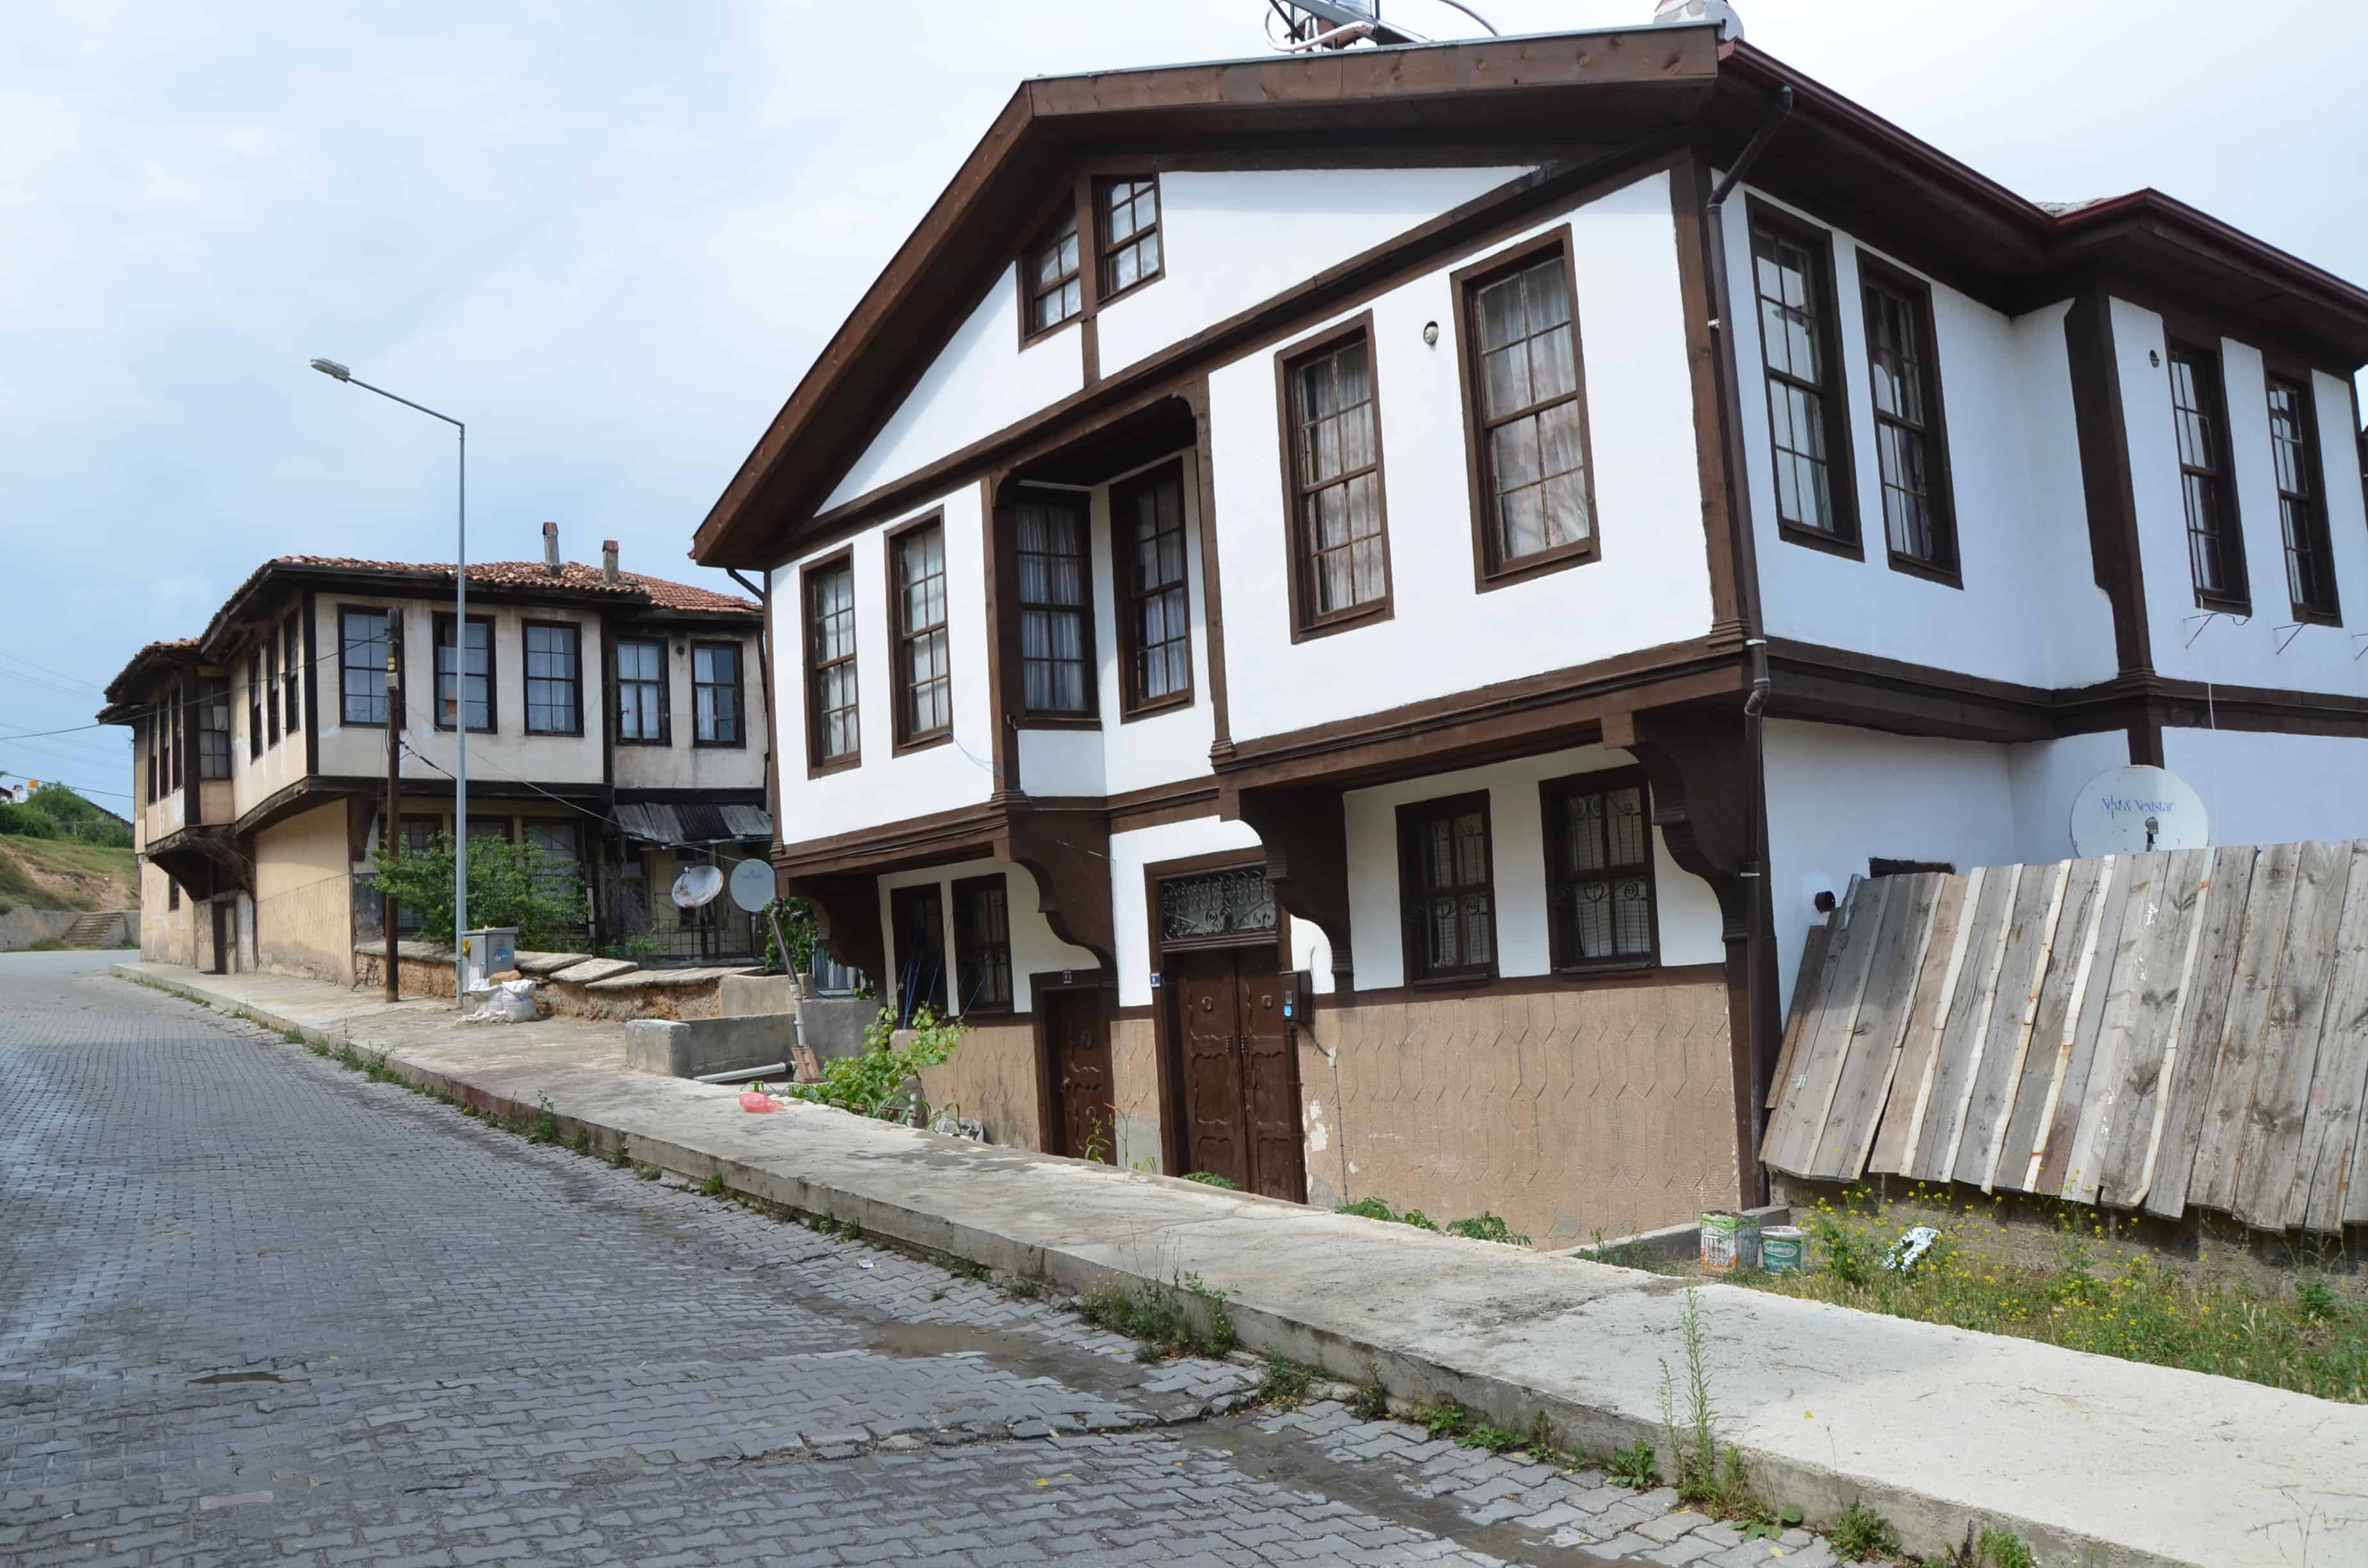 Ottoman home in Kastamonu, Turkey